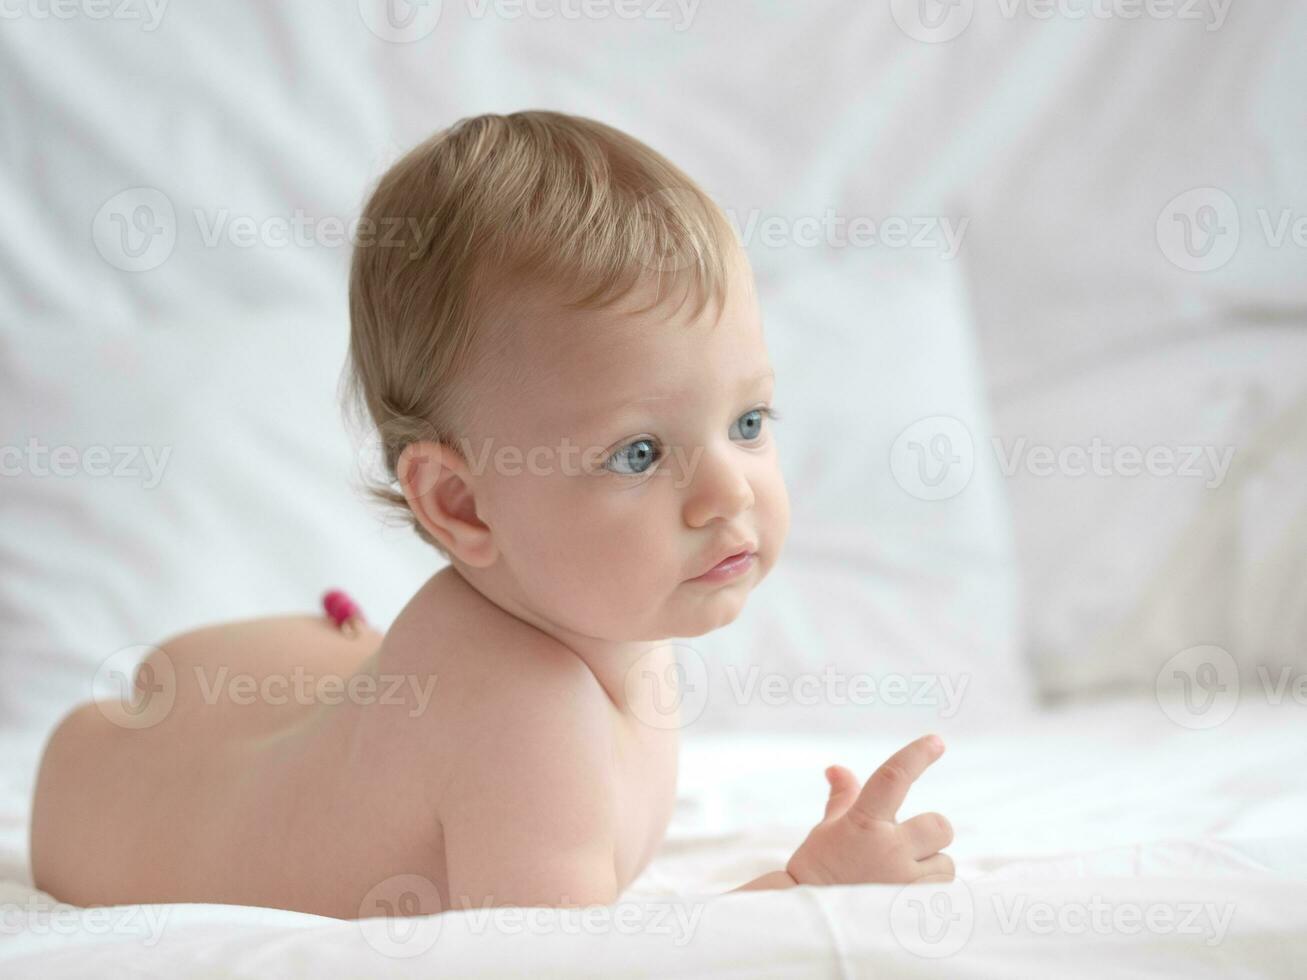 rubio linda bebé acostado en cama foto